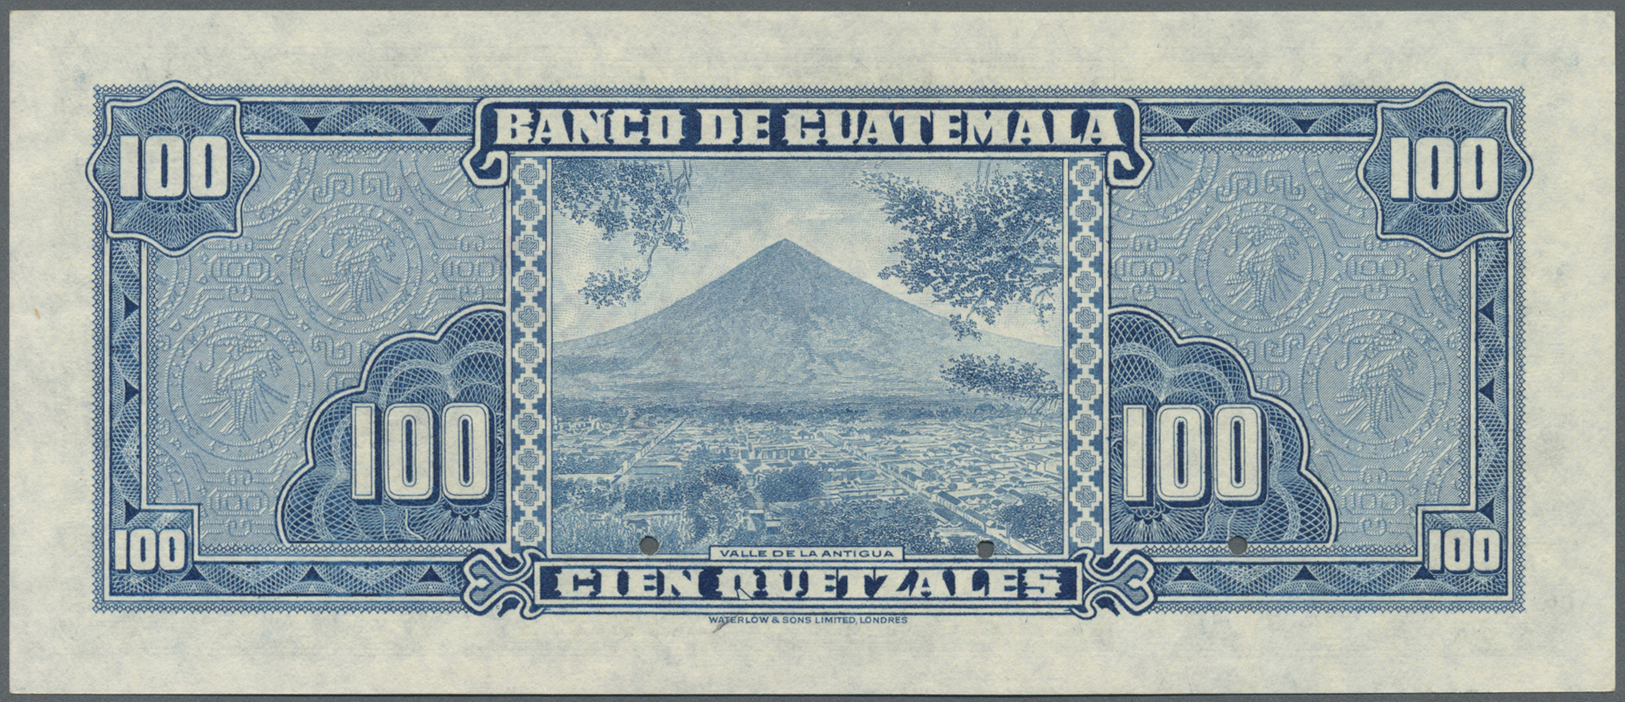 00965 Guatemala: Banco De Guatemala 100 Quetzales 1959-65 SPECIMEN By Waterlow & Sons Ltd., P.49s In Perfect UNC Conditi - Guatemala